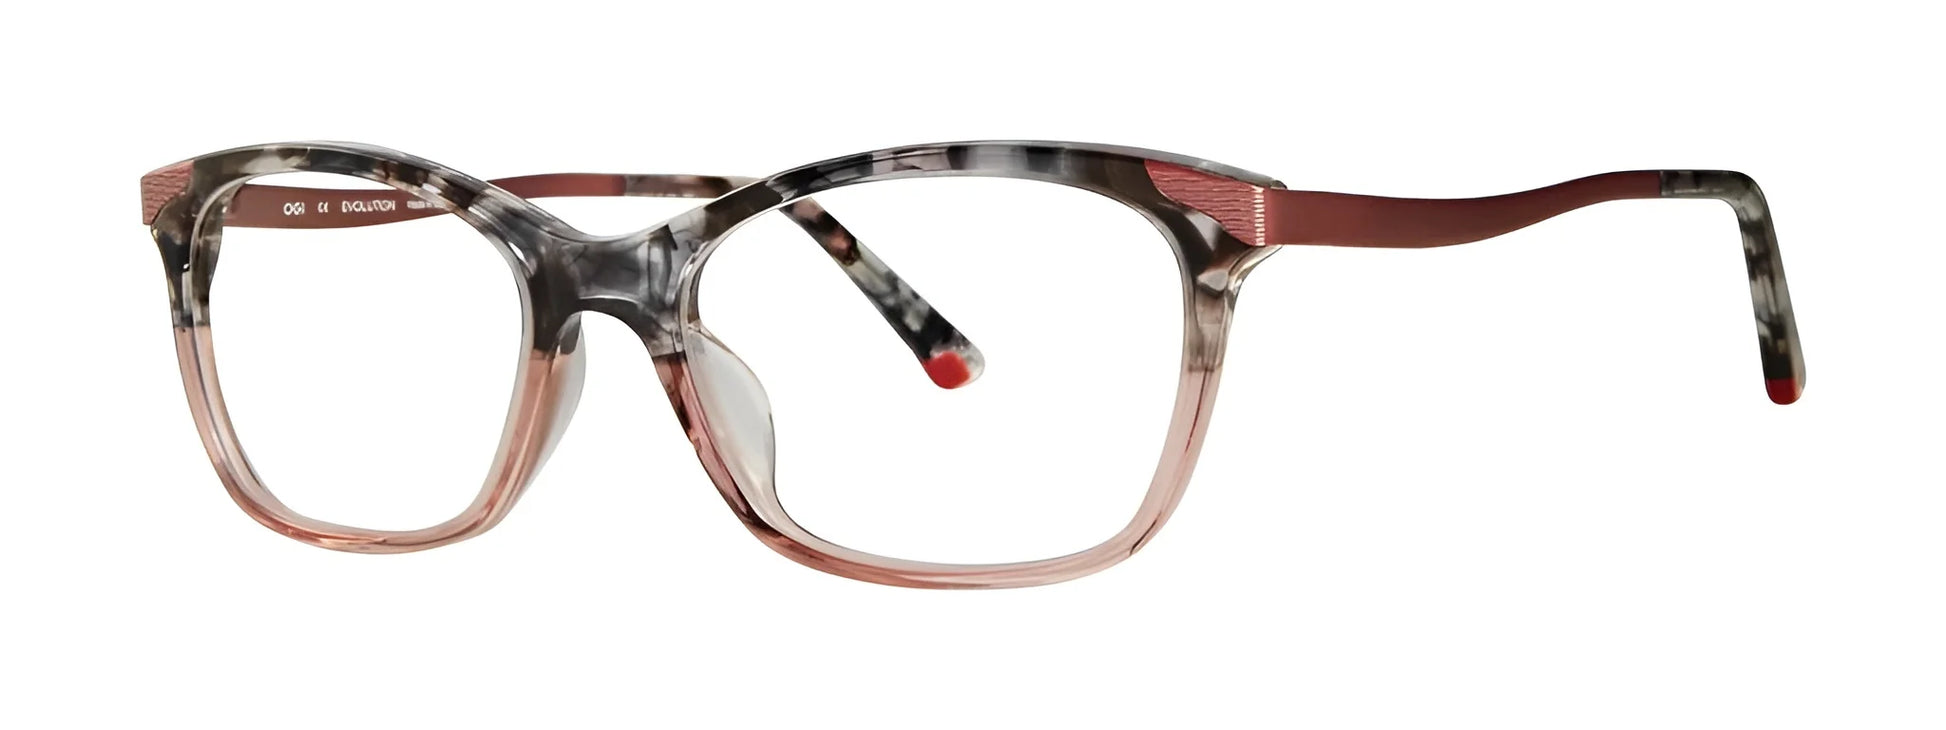 OGI 9245 Eyeglasses Blush Medley